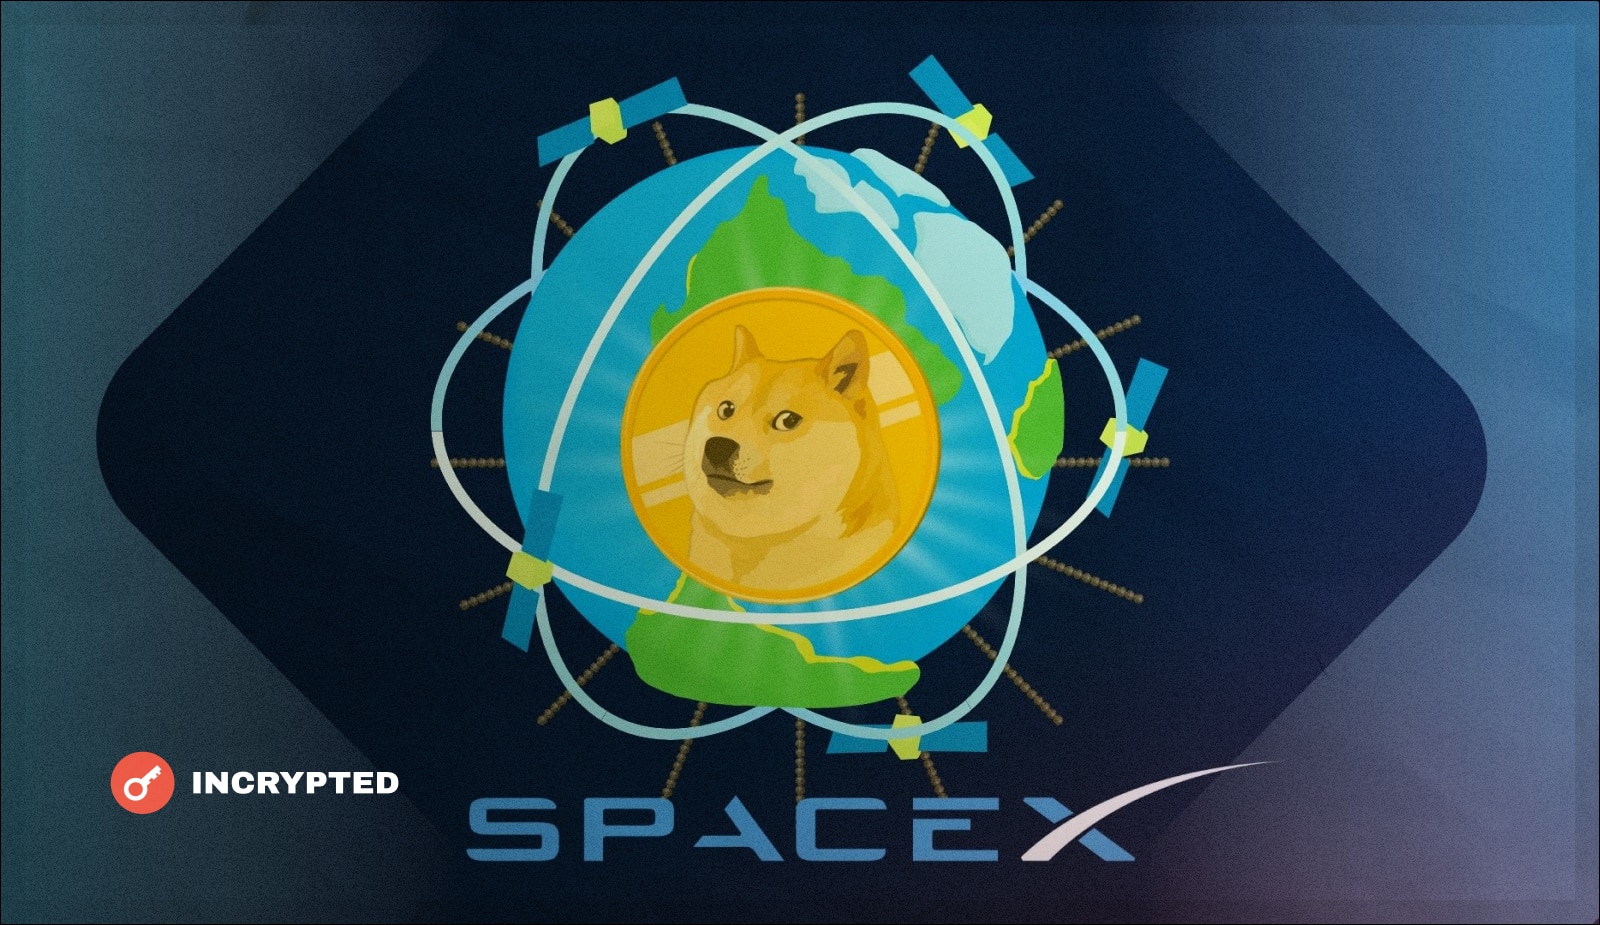 SpaceX предложит оплату в Dogecoin. Как насчет Starlink? Заглавный коллаж новости.